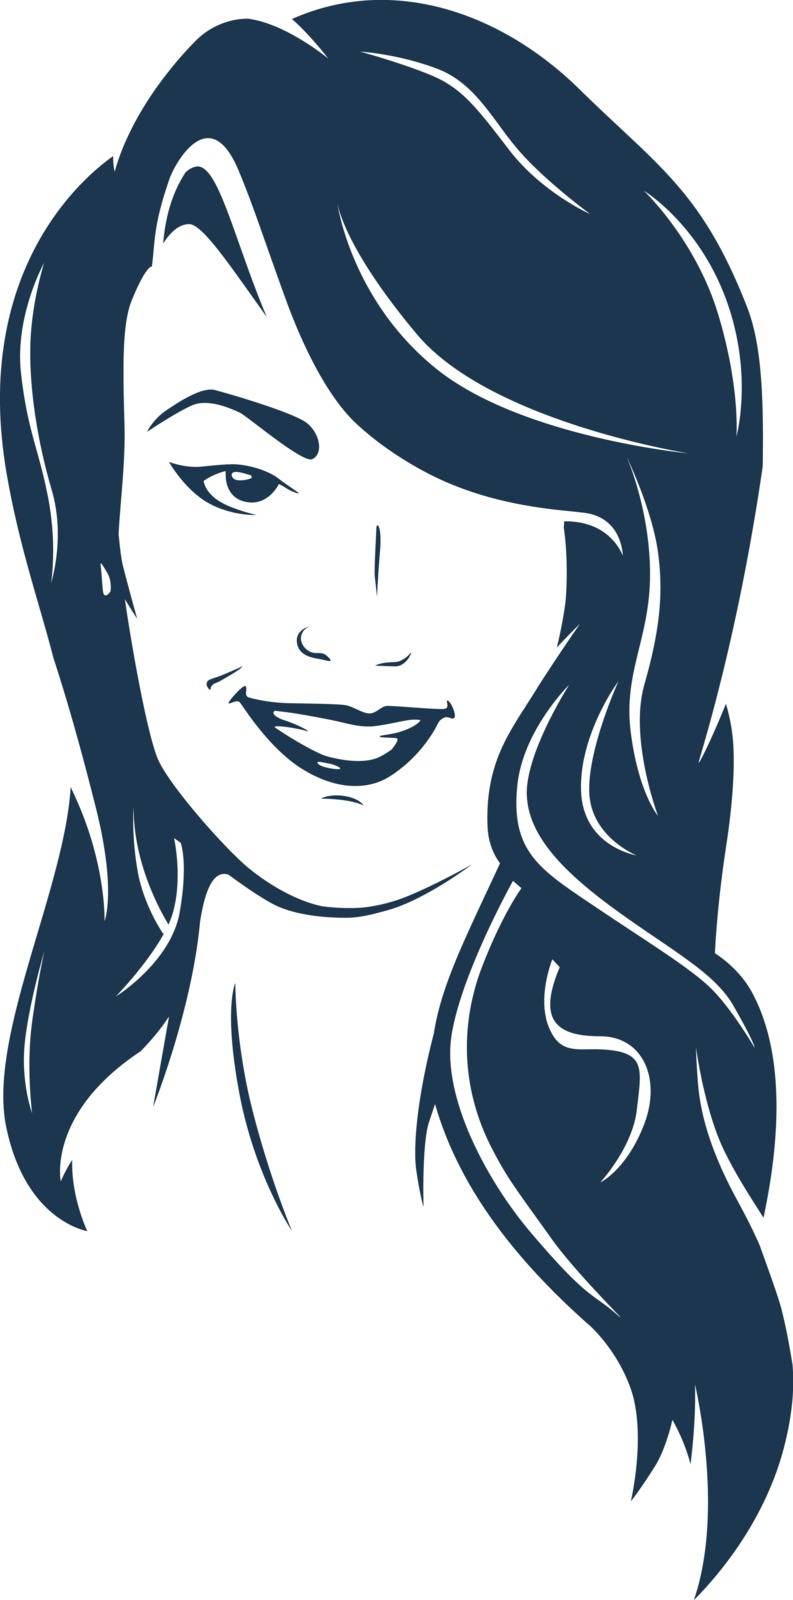 Brunette hair woman face smiling. Fully Editable Vector Illustration